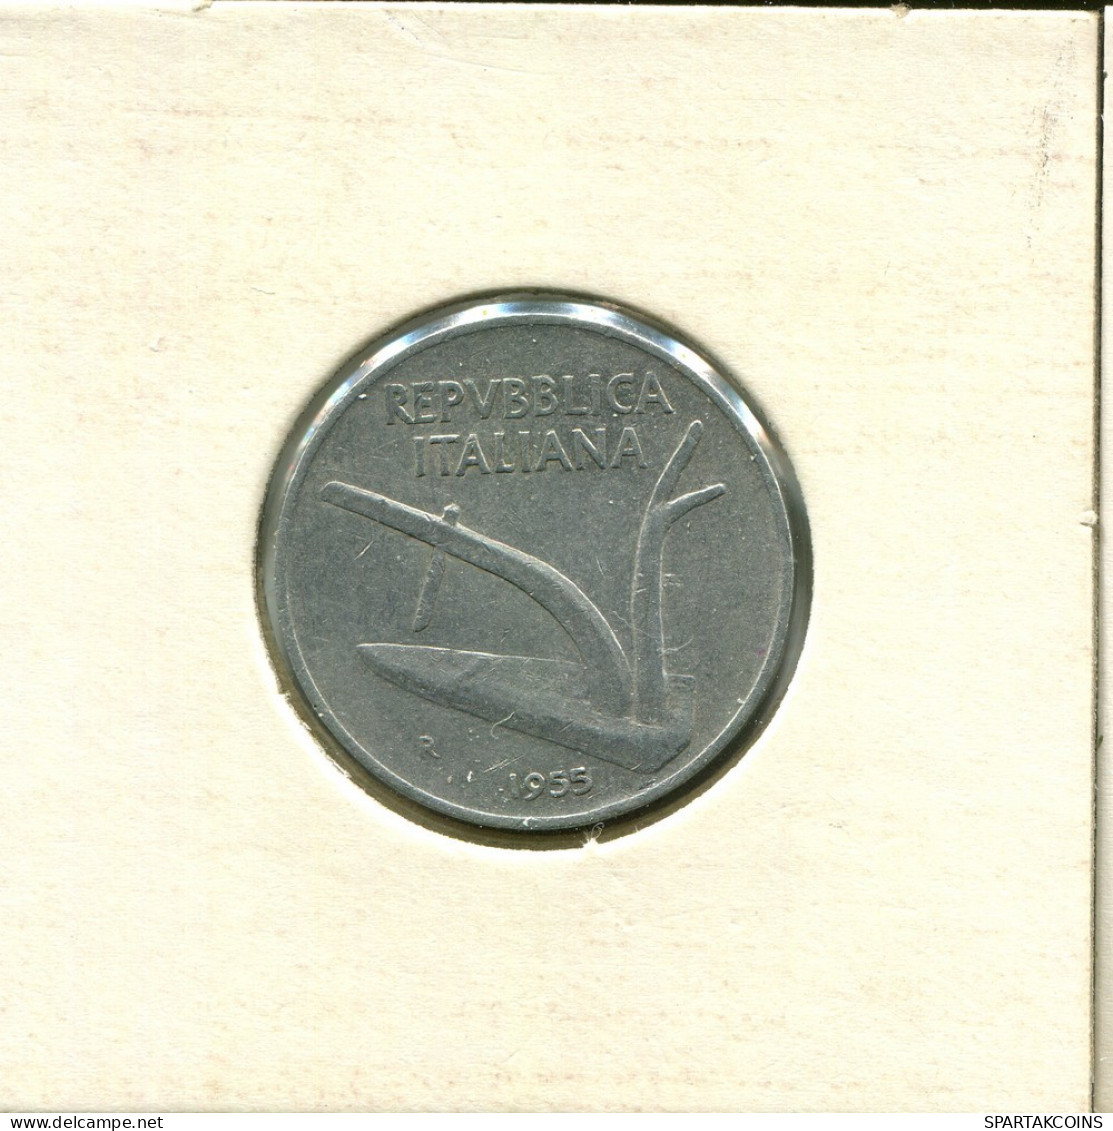 10 LIRE 1955 ITALIA ITALY Moneda #AT726.E.A - 10 Lire